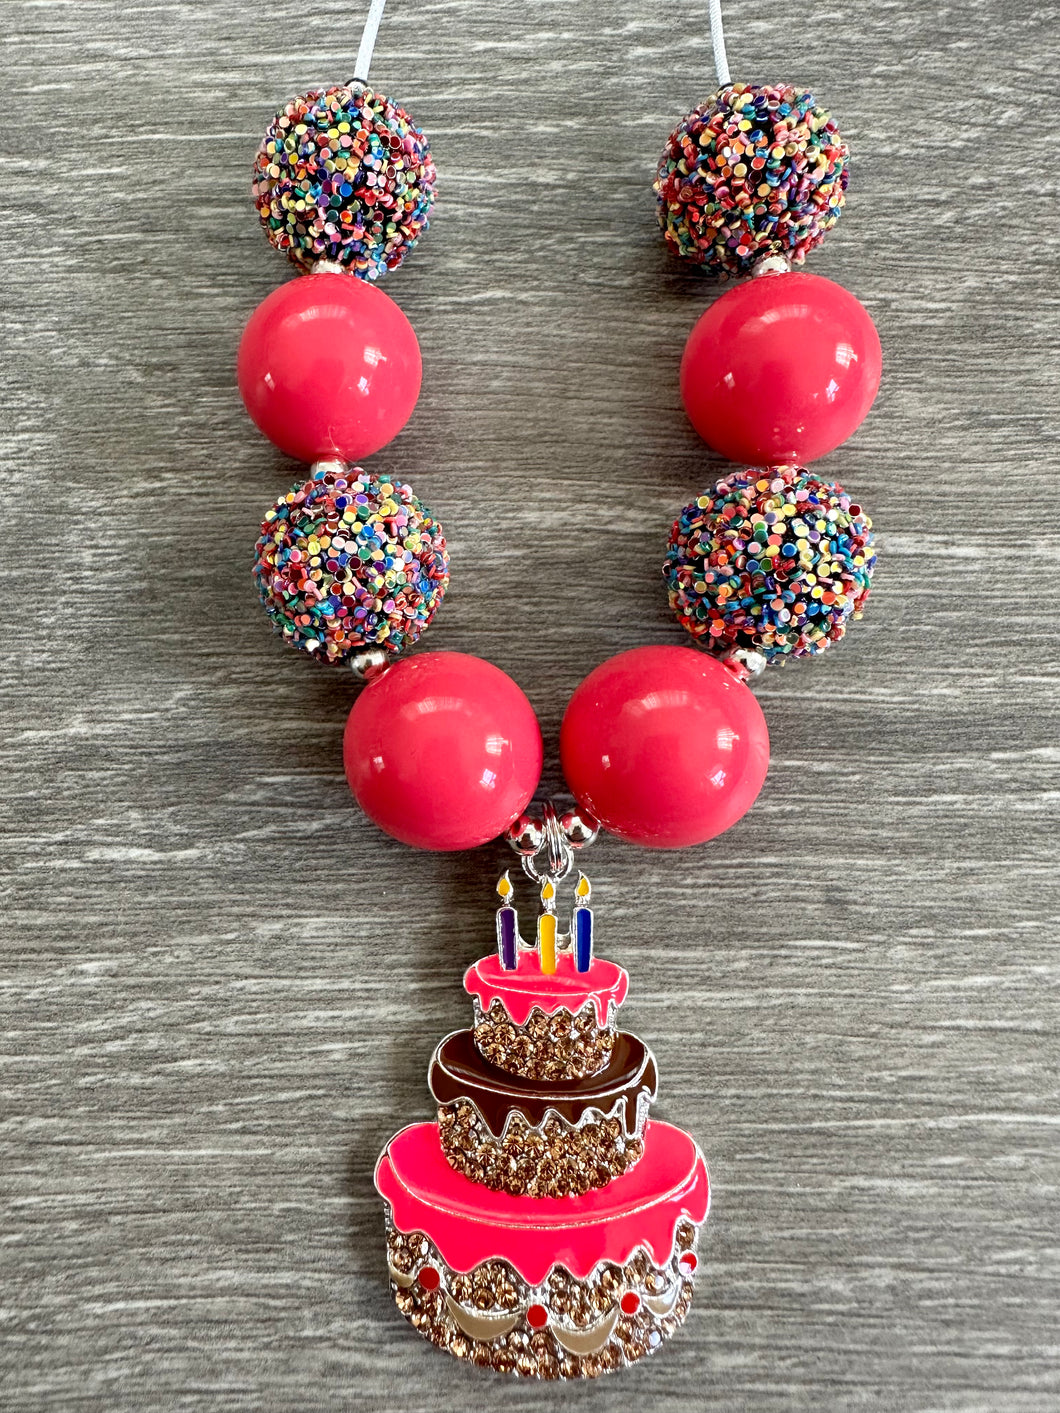 Party- birthday cake pendant